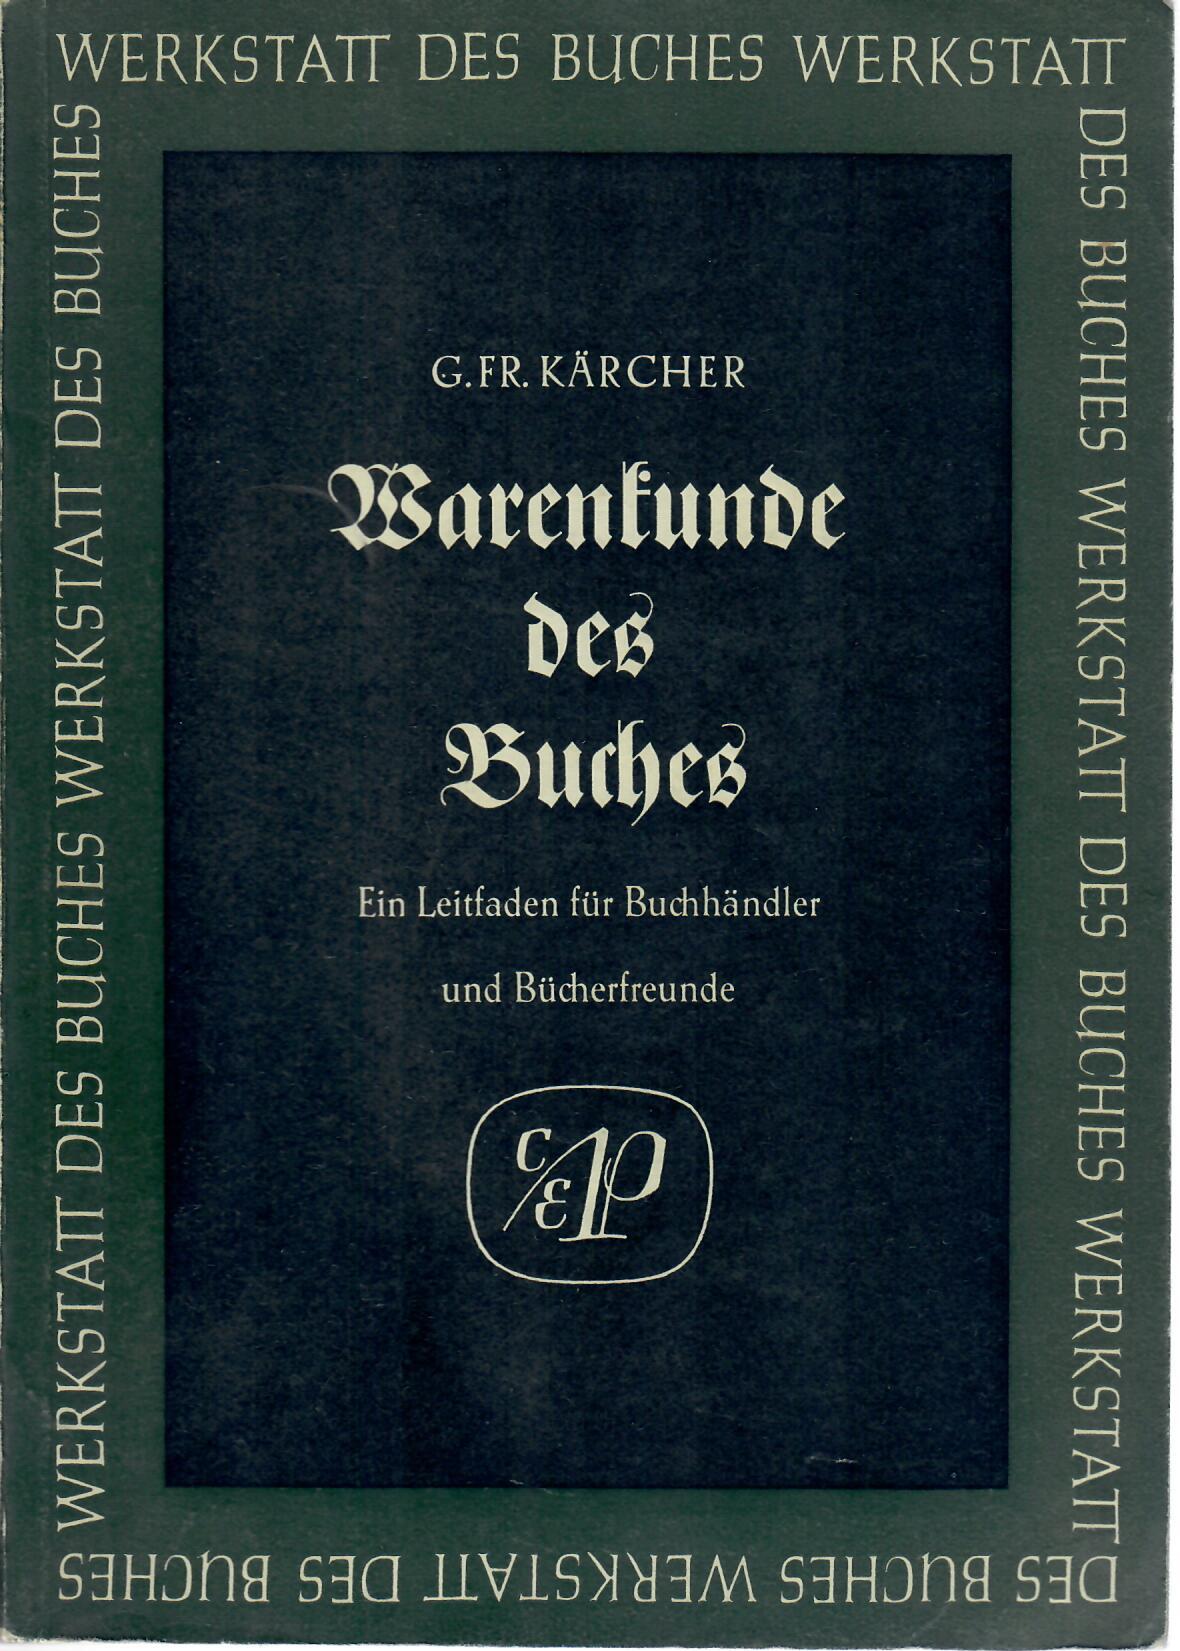 Kärcher, Gustav Friedrich   : Warenkunde des Buches : ein Leitfaden für Buchhändler und Bücherfreunde.